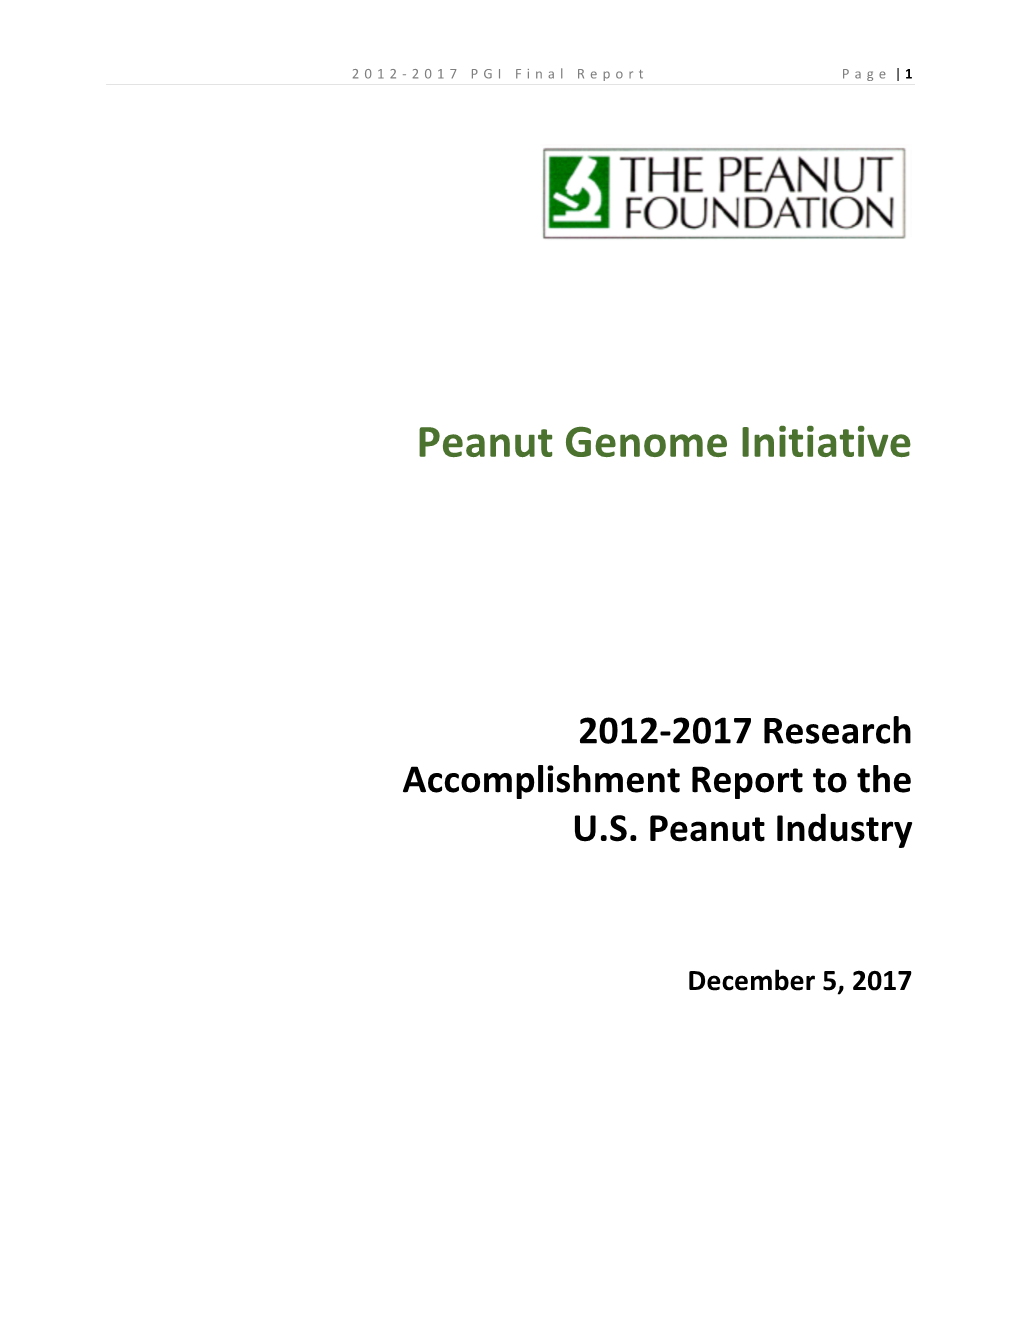 Peanut Genome Initiative Final Report